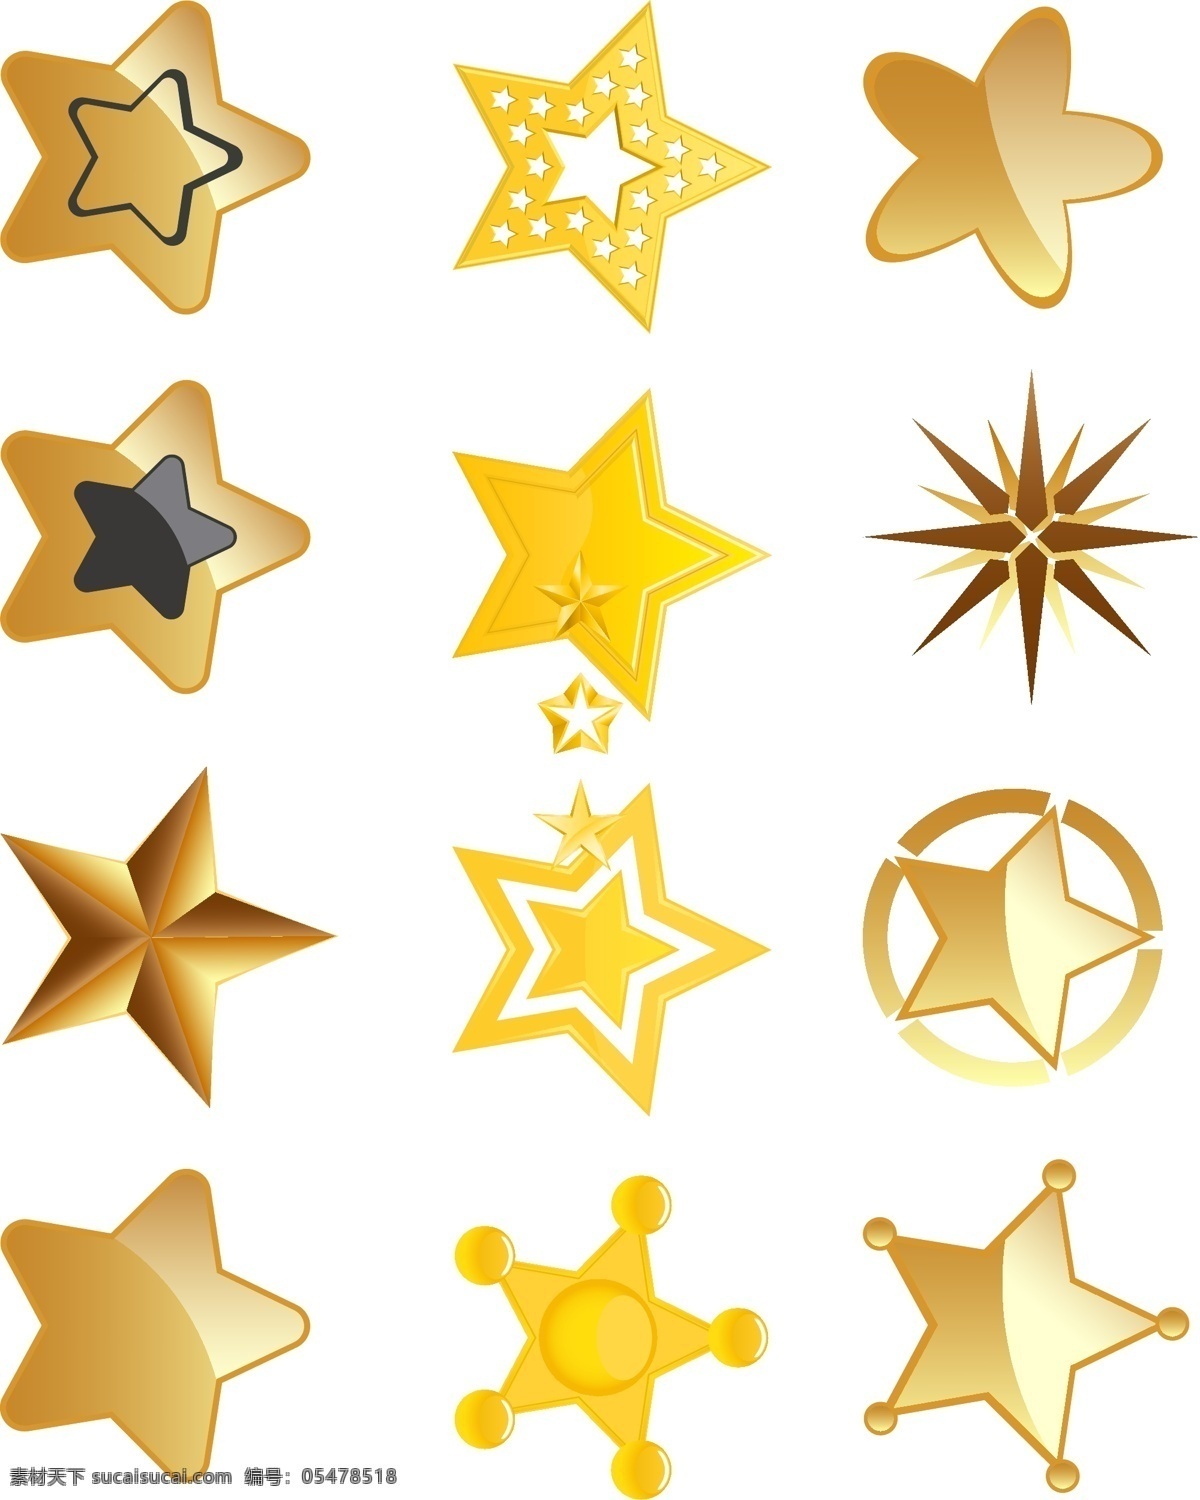 金黄色 五角星 矢量 元素 商用 设计元素 矢量元素 装饰元素 金黄色五角星 黄色元素 五角星元素 矢量五角星 元素装饰 ai元素